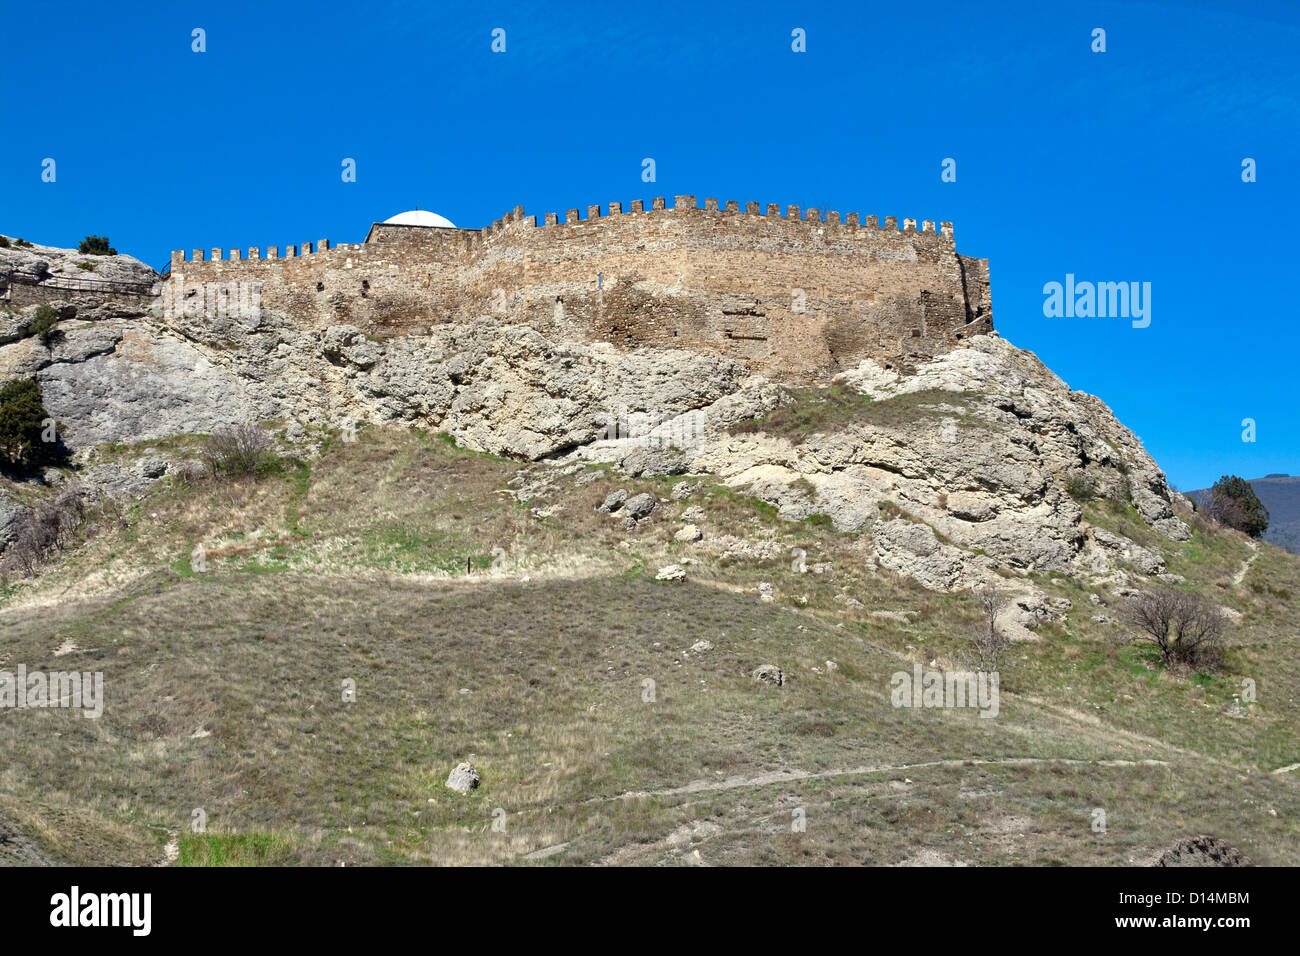 Les murs fortifiés de Sudak forteresse génoise. La Crimée, Ukraine. Banque D'Images